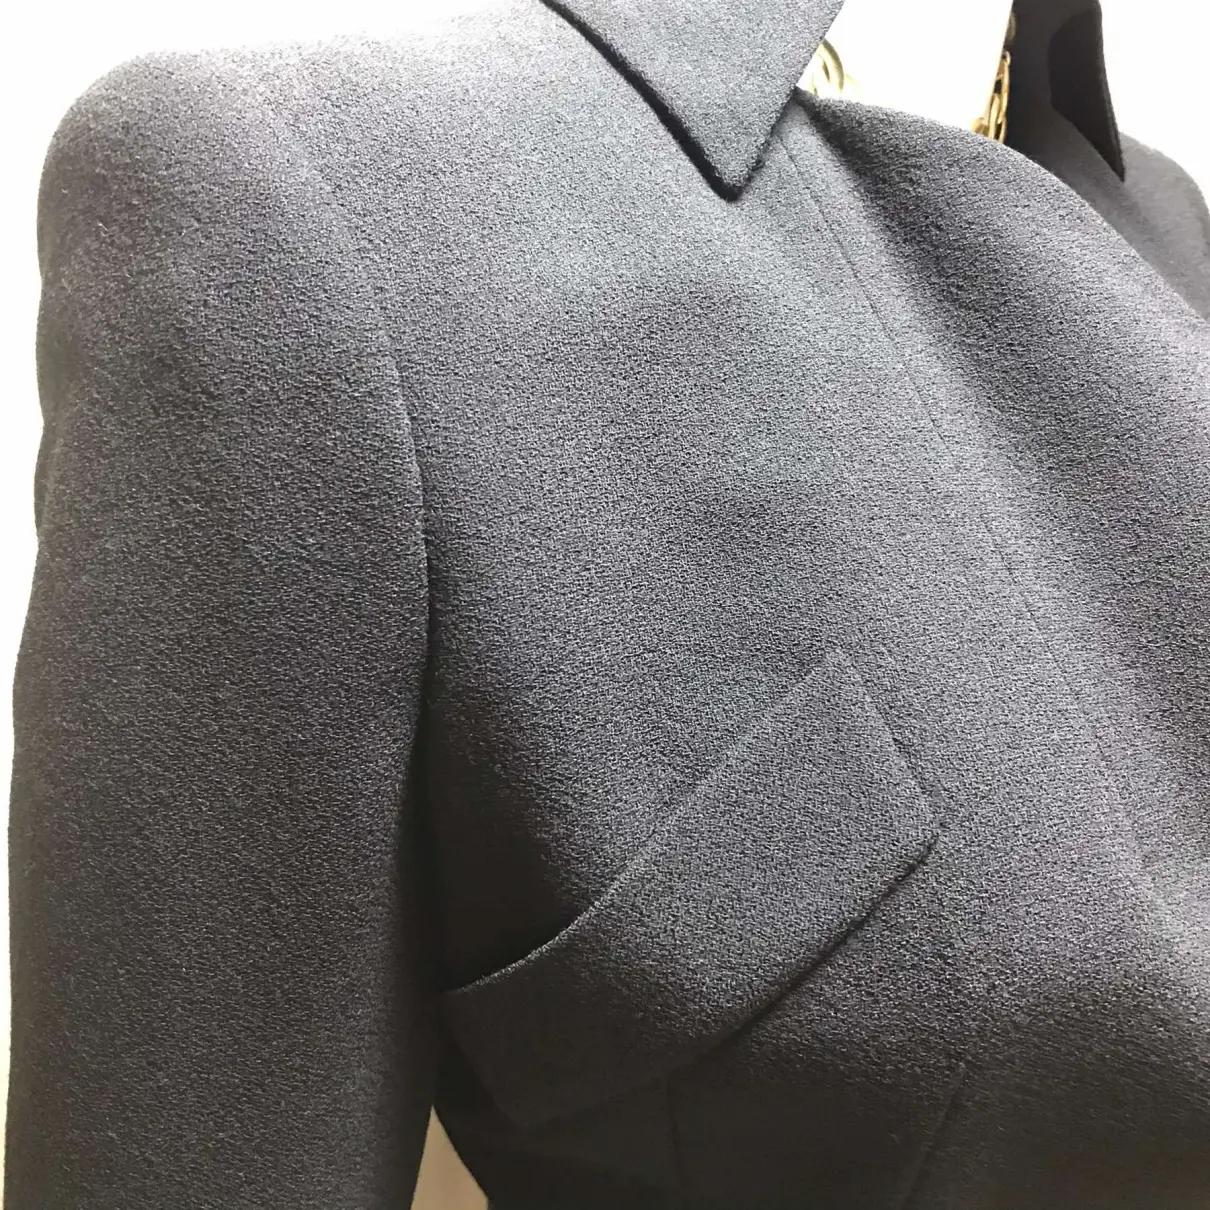 Wool suit jacket Alexander McQueen